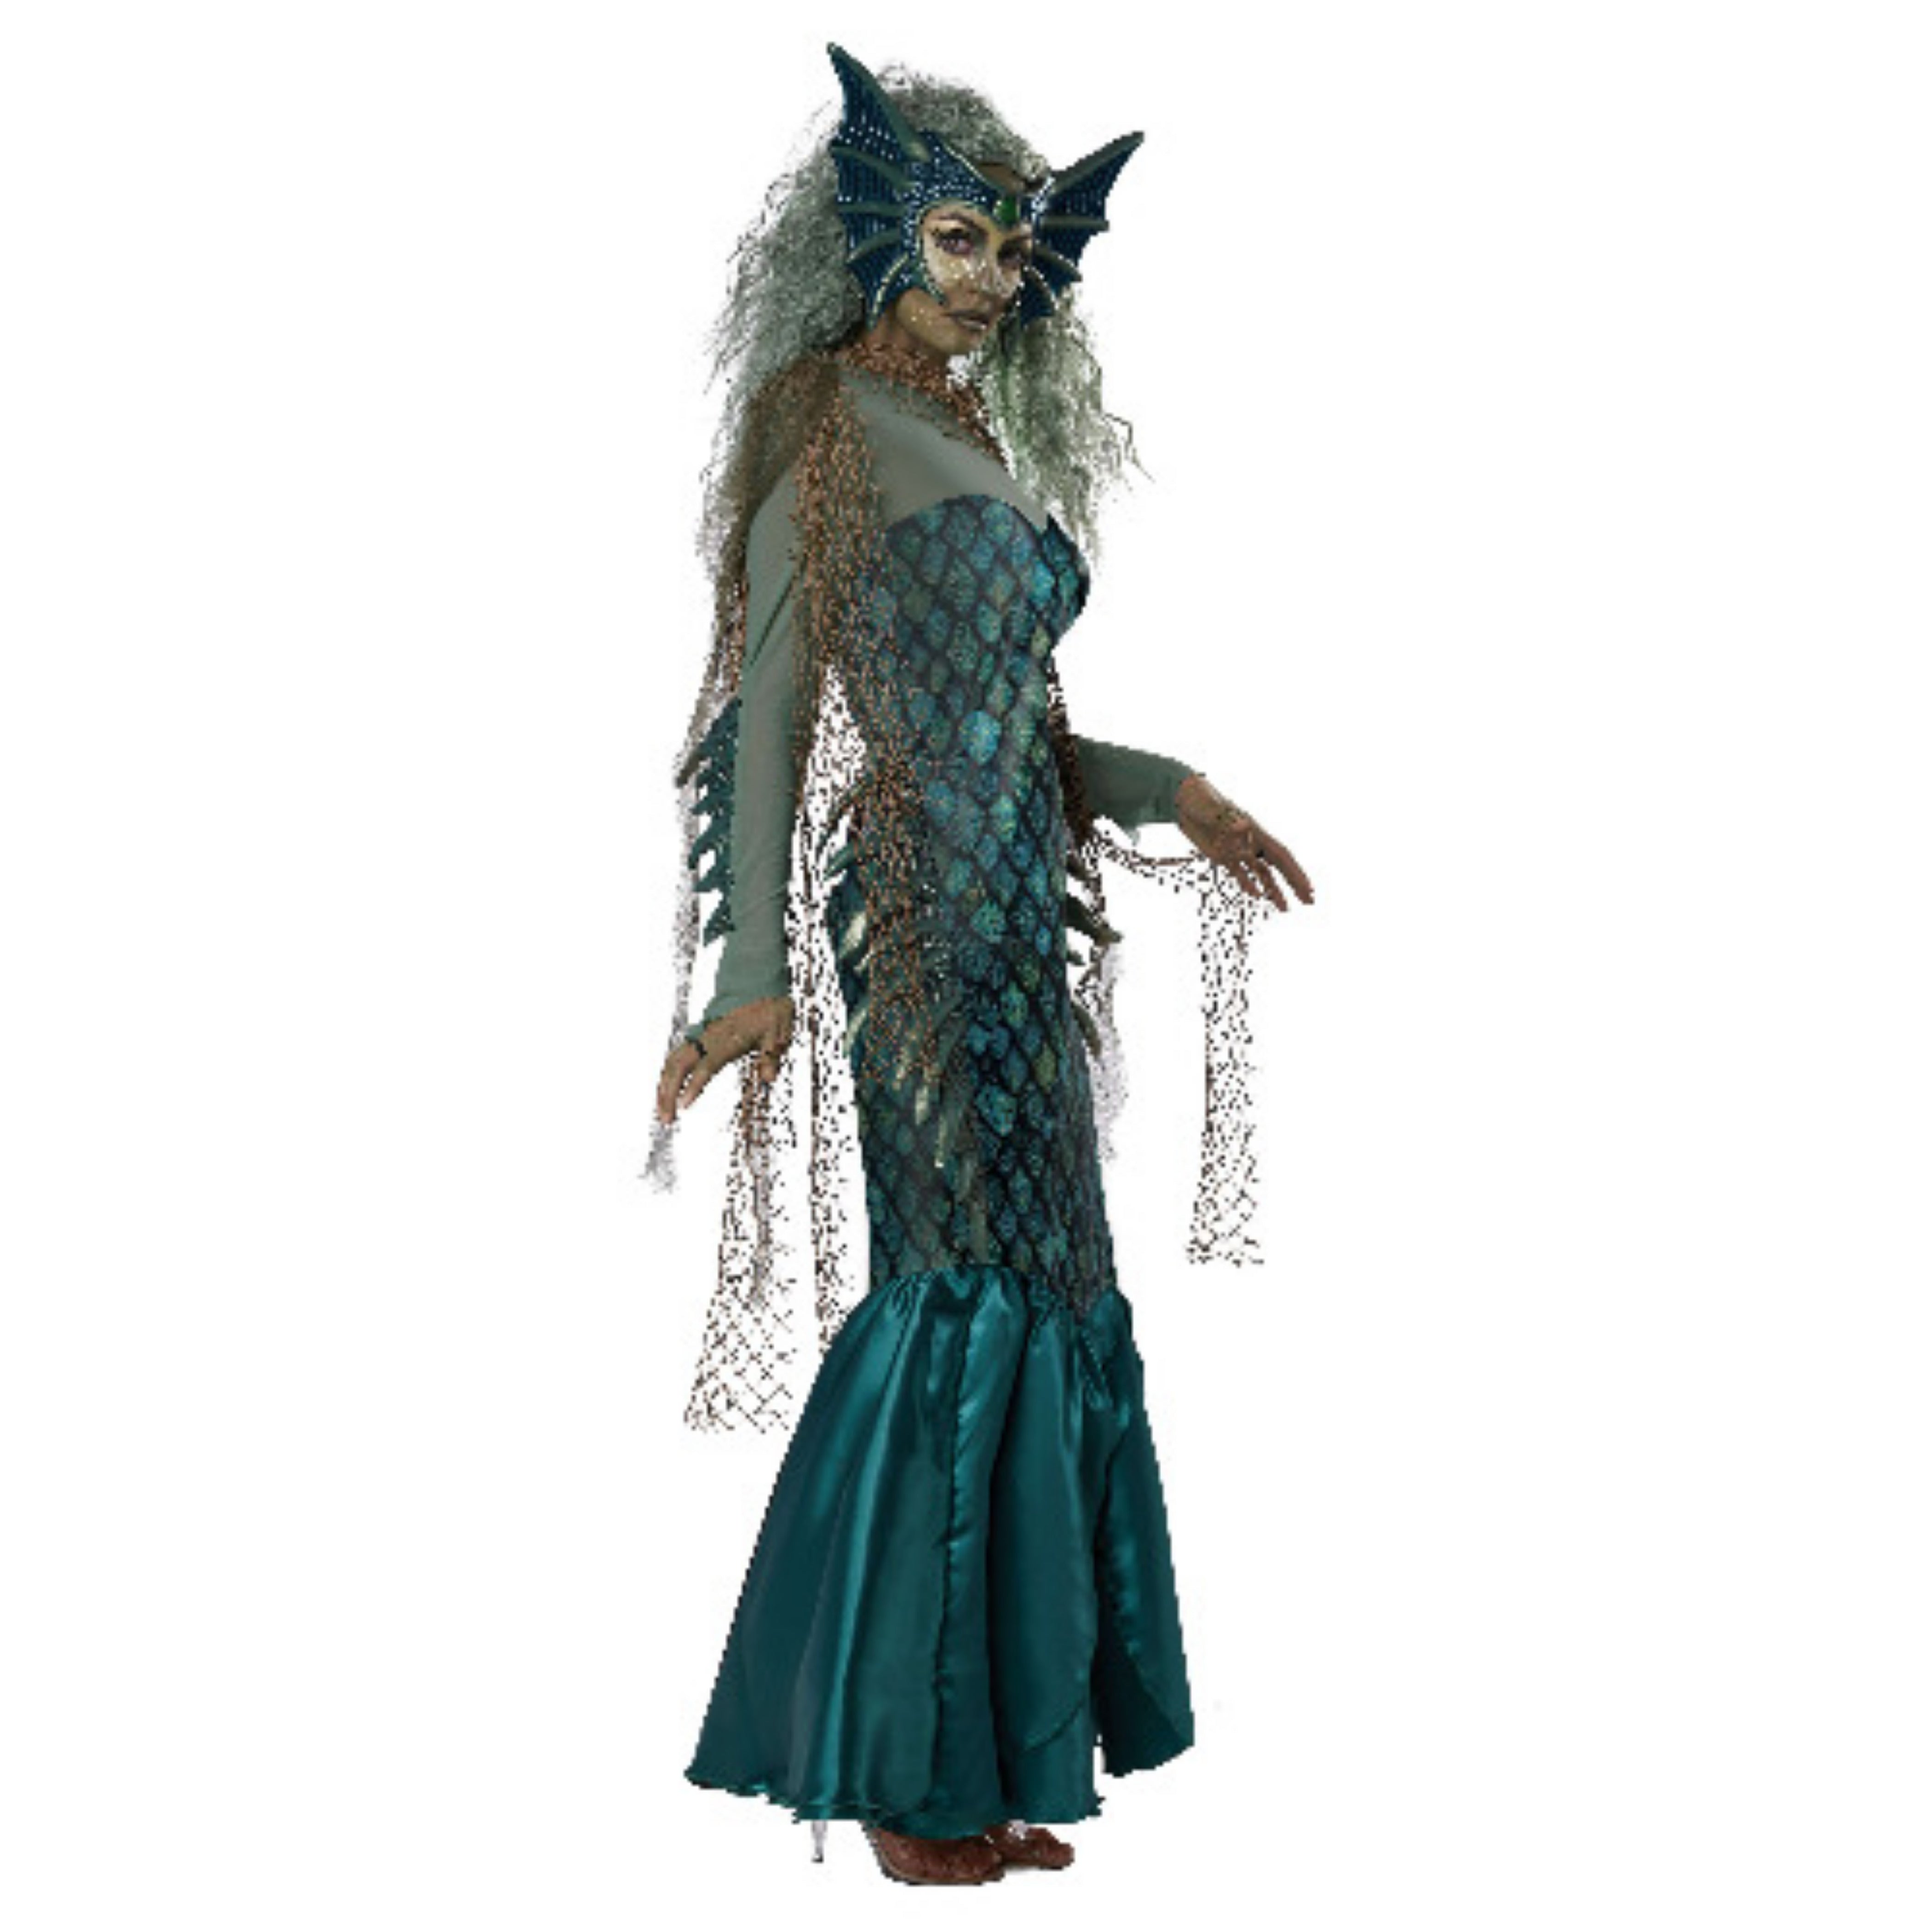 Mermaid makeup / Evil mermaid / Girls kid halloween costume